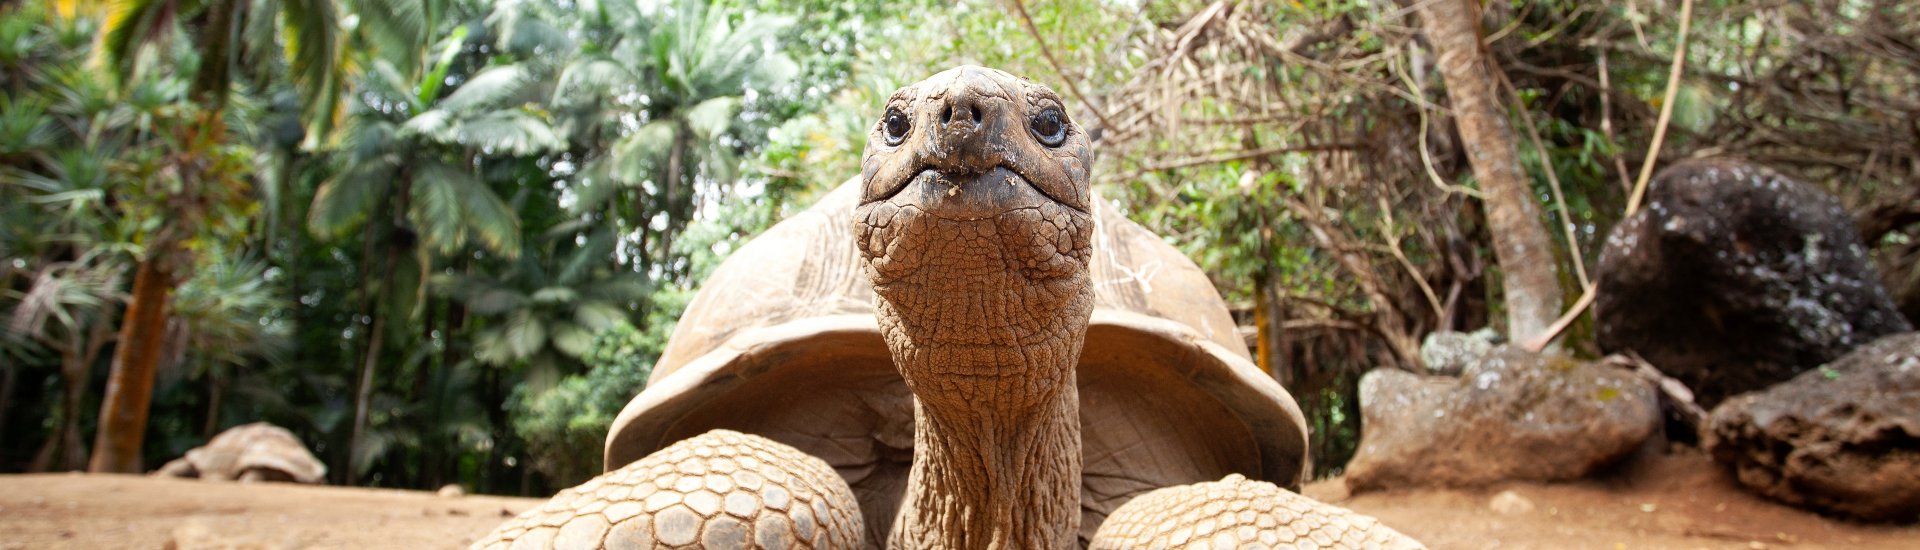 seychelles-aldabra